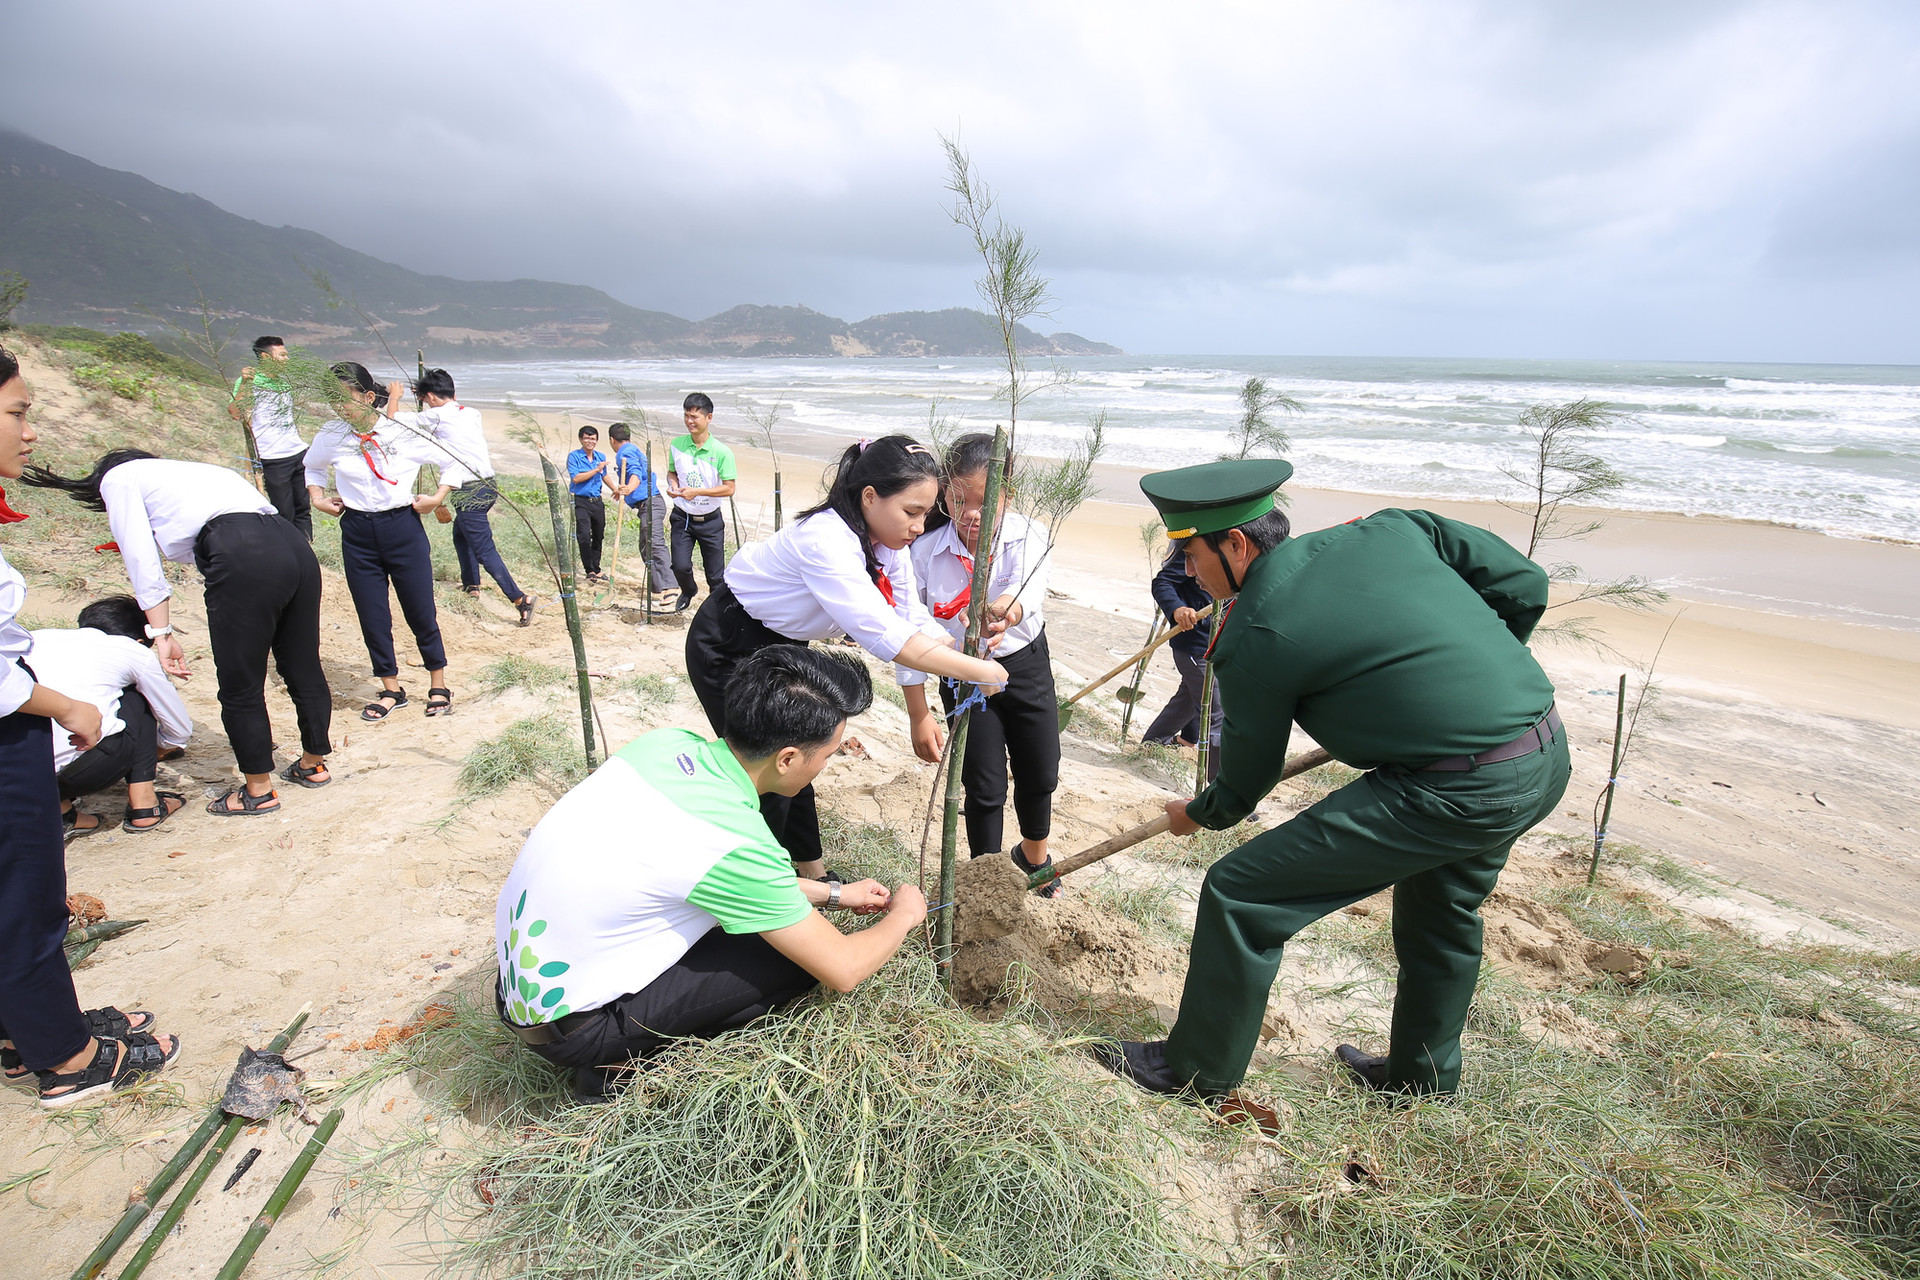 Mạng xã hội bỗng chốc “xanh rì” với chiến dịch “Triệu cây vươn cao cho Việt Nam xanh”